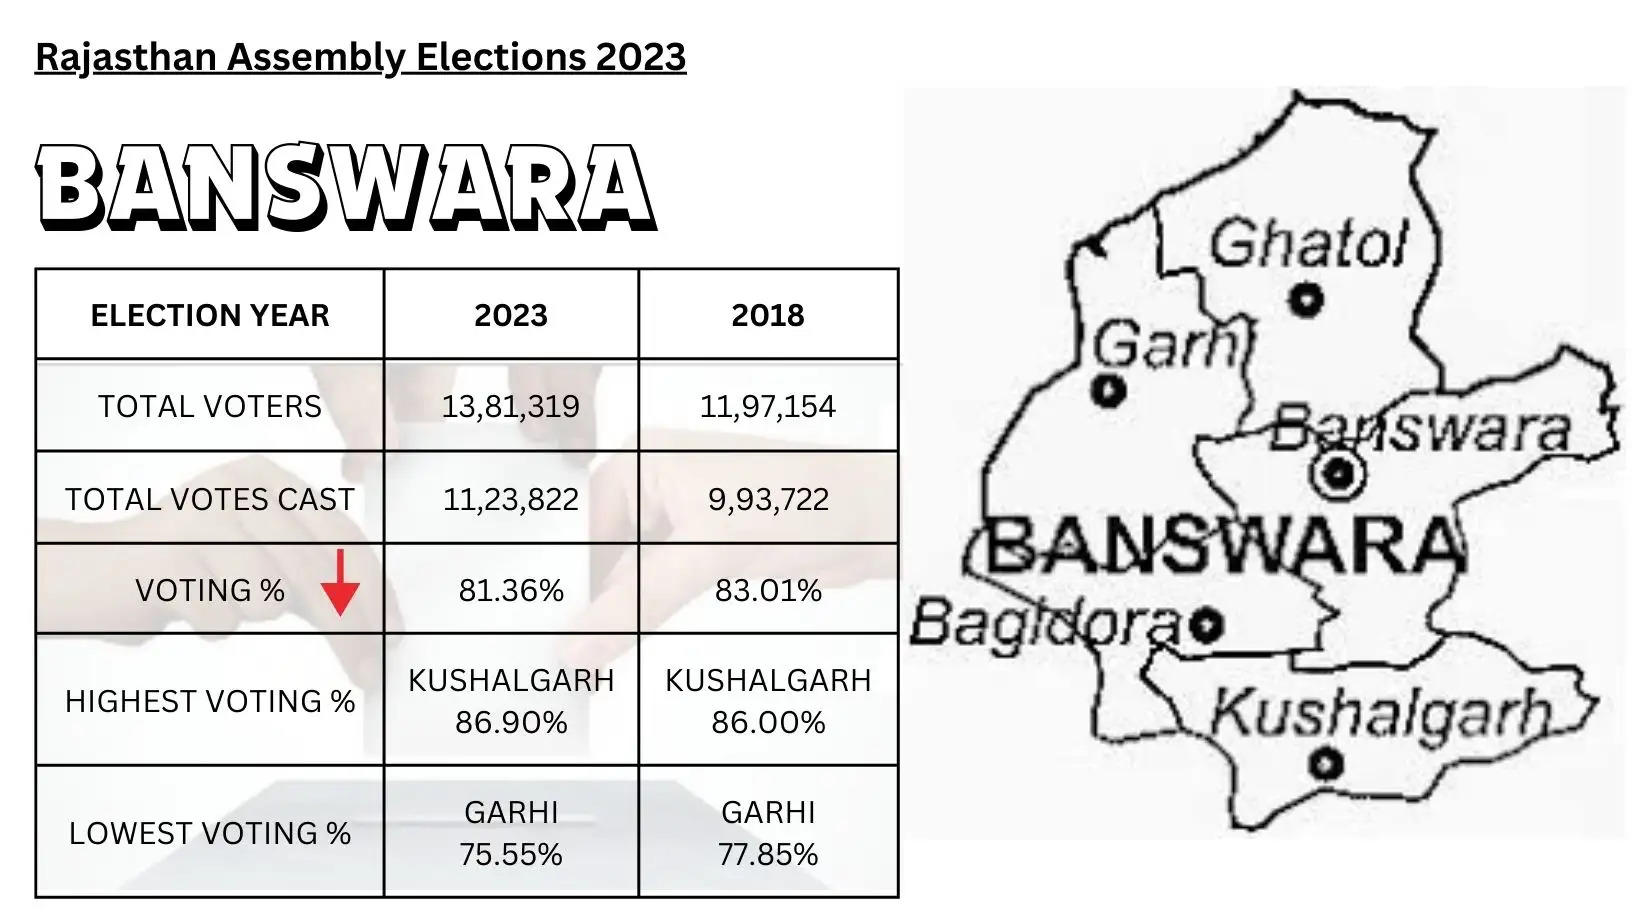 BANSWARA: Official Statistics of Rajasthan Assembly Elections 2023 Banswara Election Update Banswara News Rajasthan Assemble Elections Update from Banswara